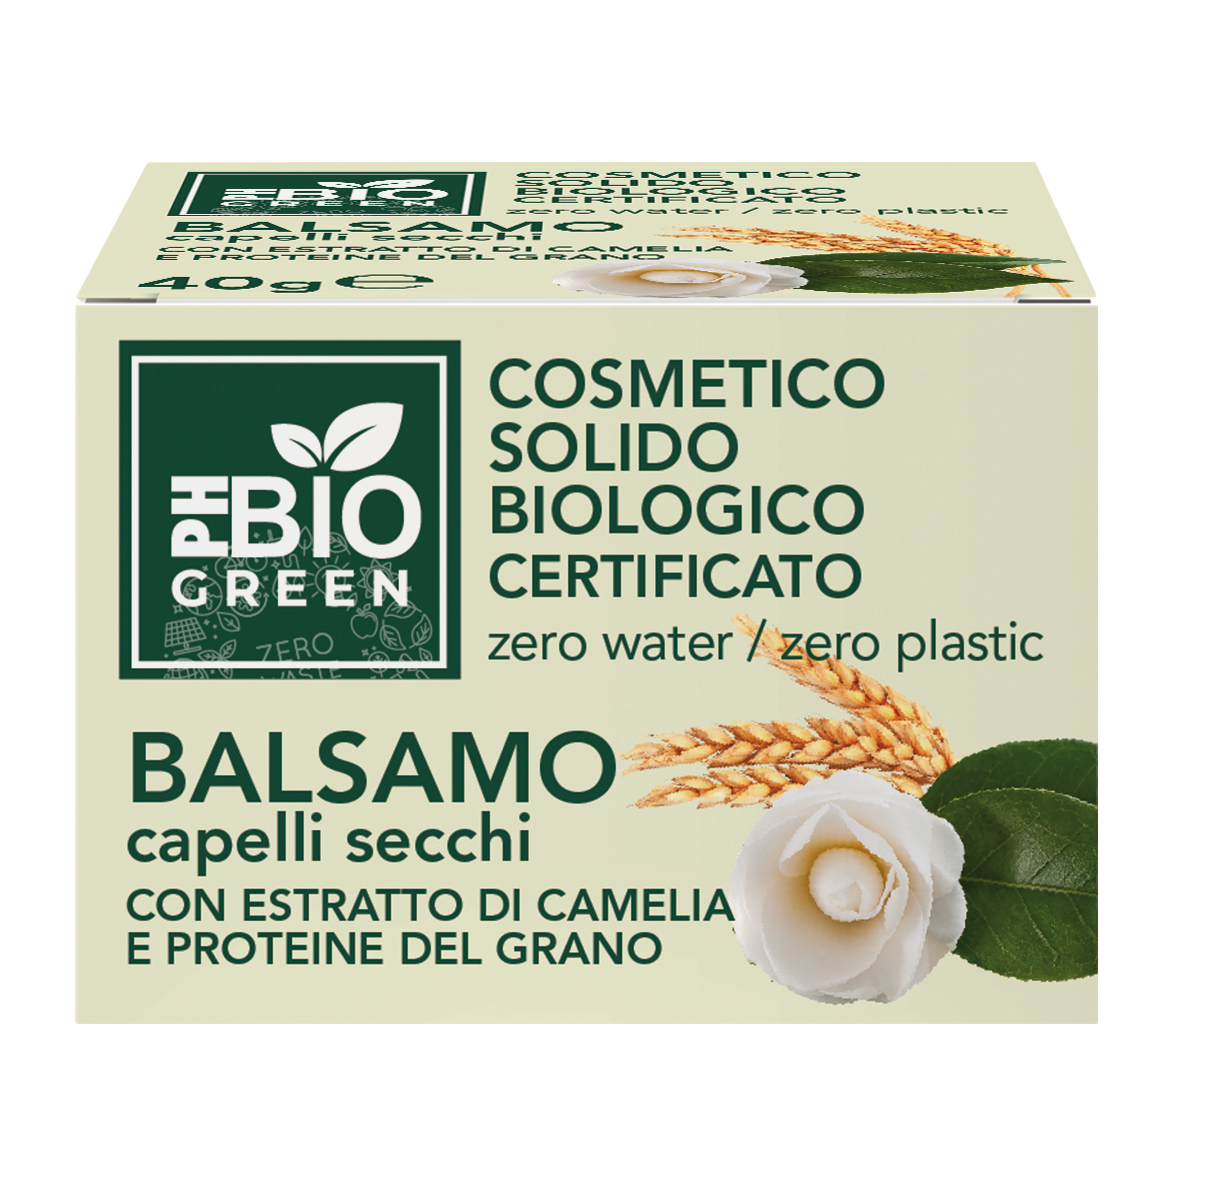 PH BIO Green - Balsamo per Capelli Secchi